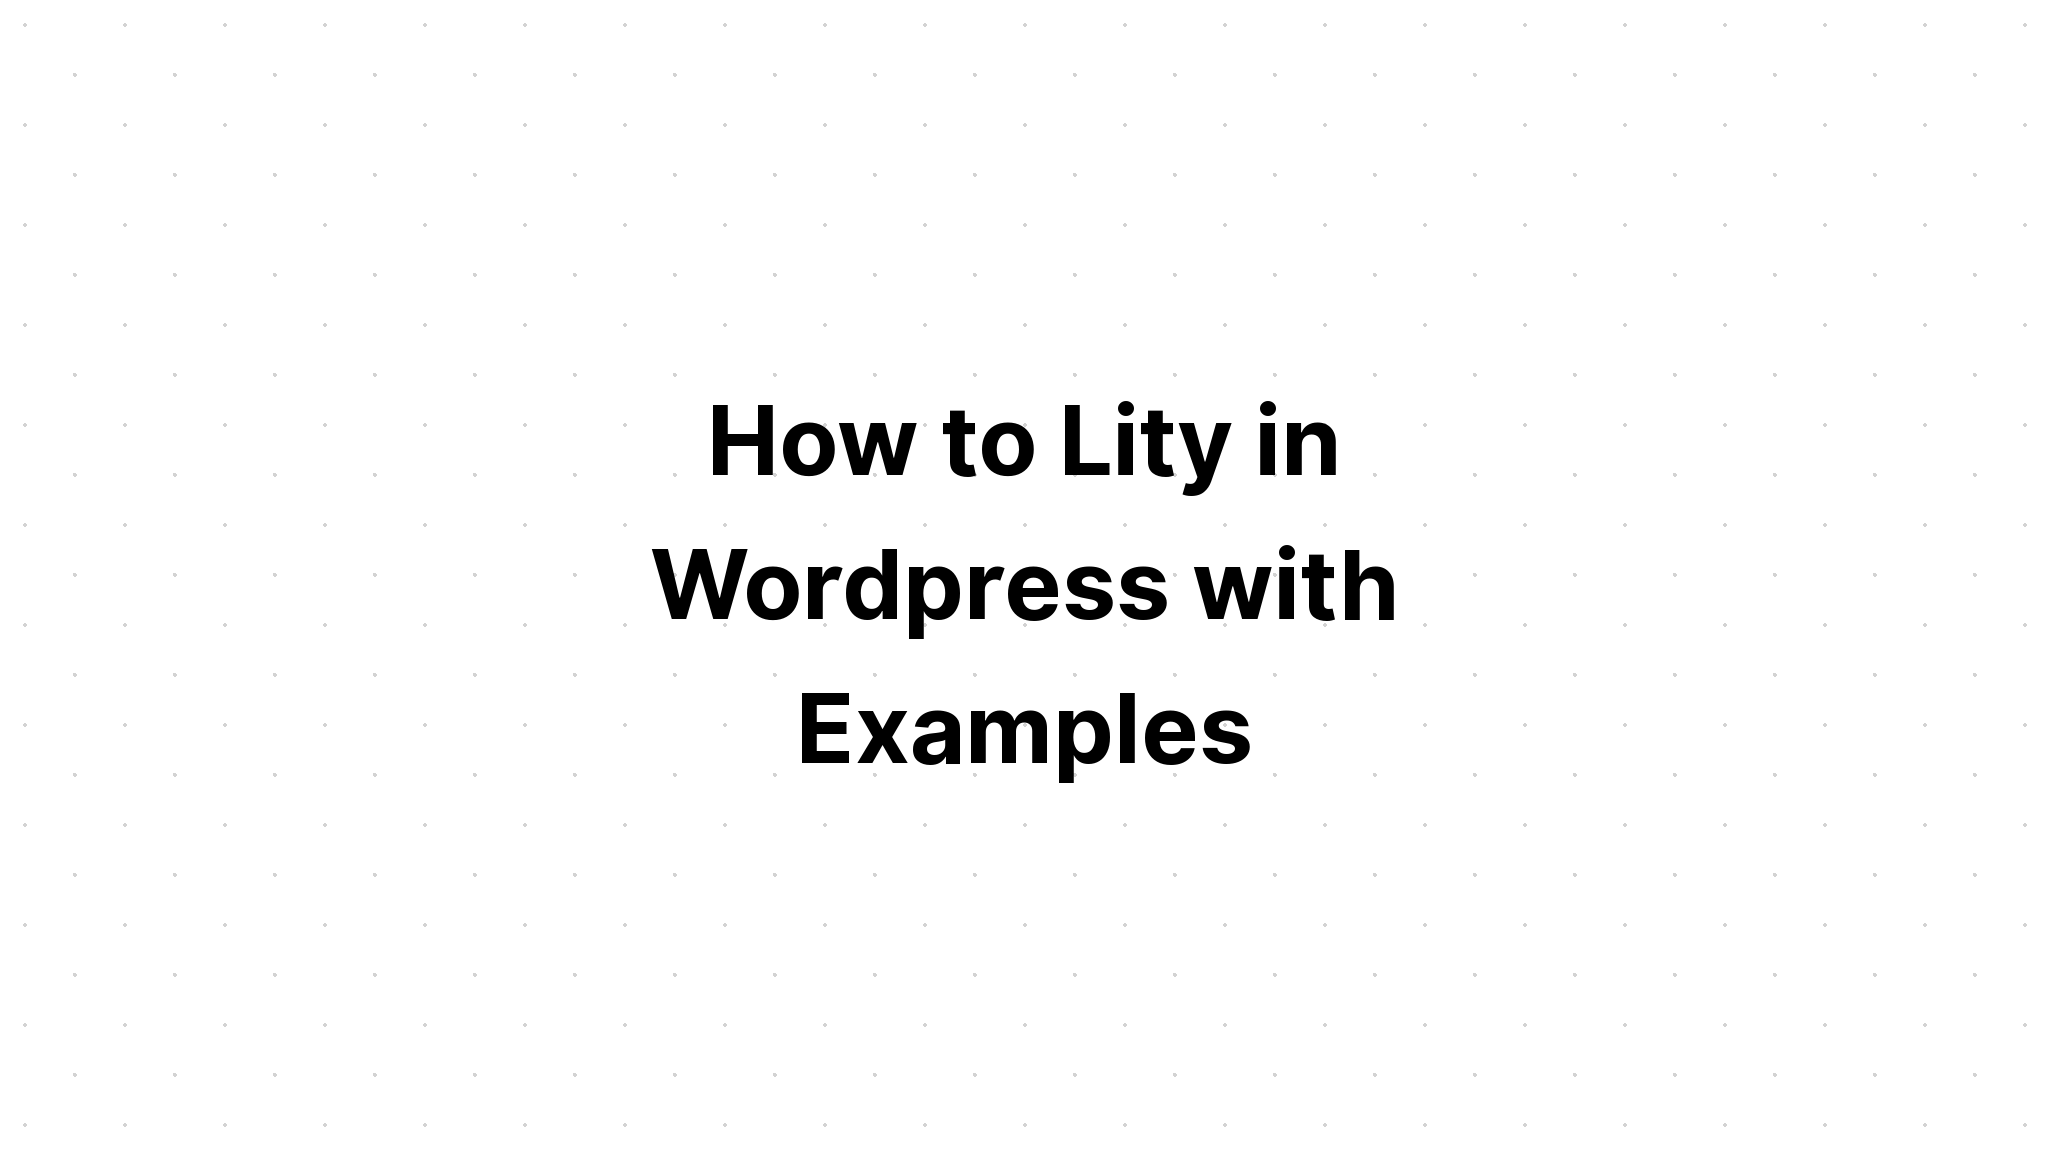 Cách Lity trong Wordpress với các ví dụ